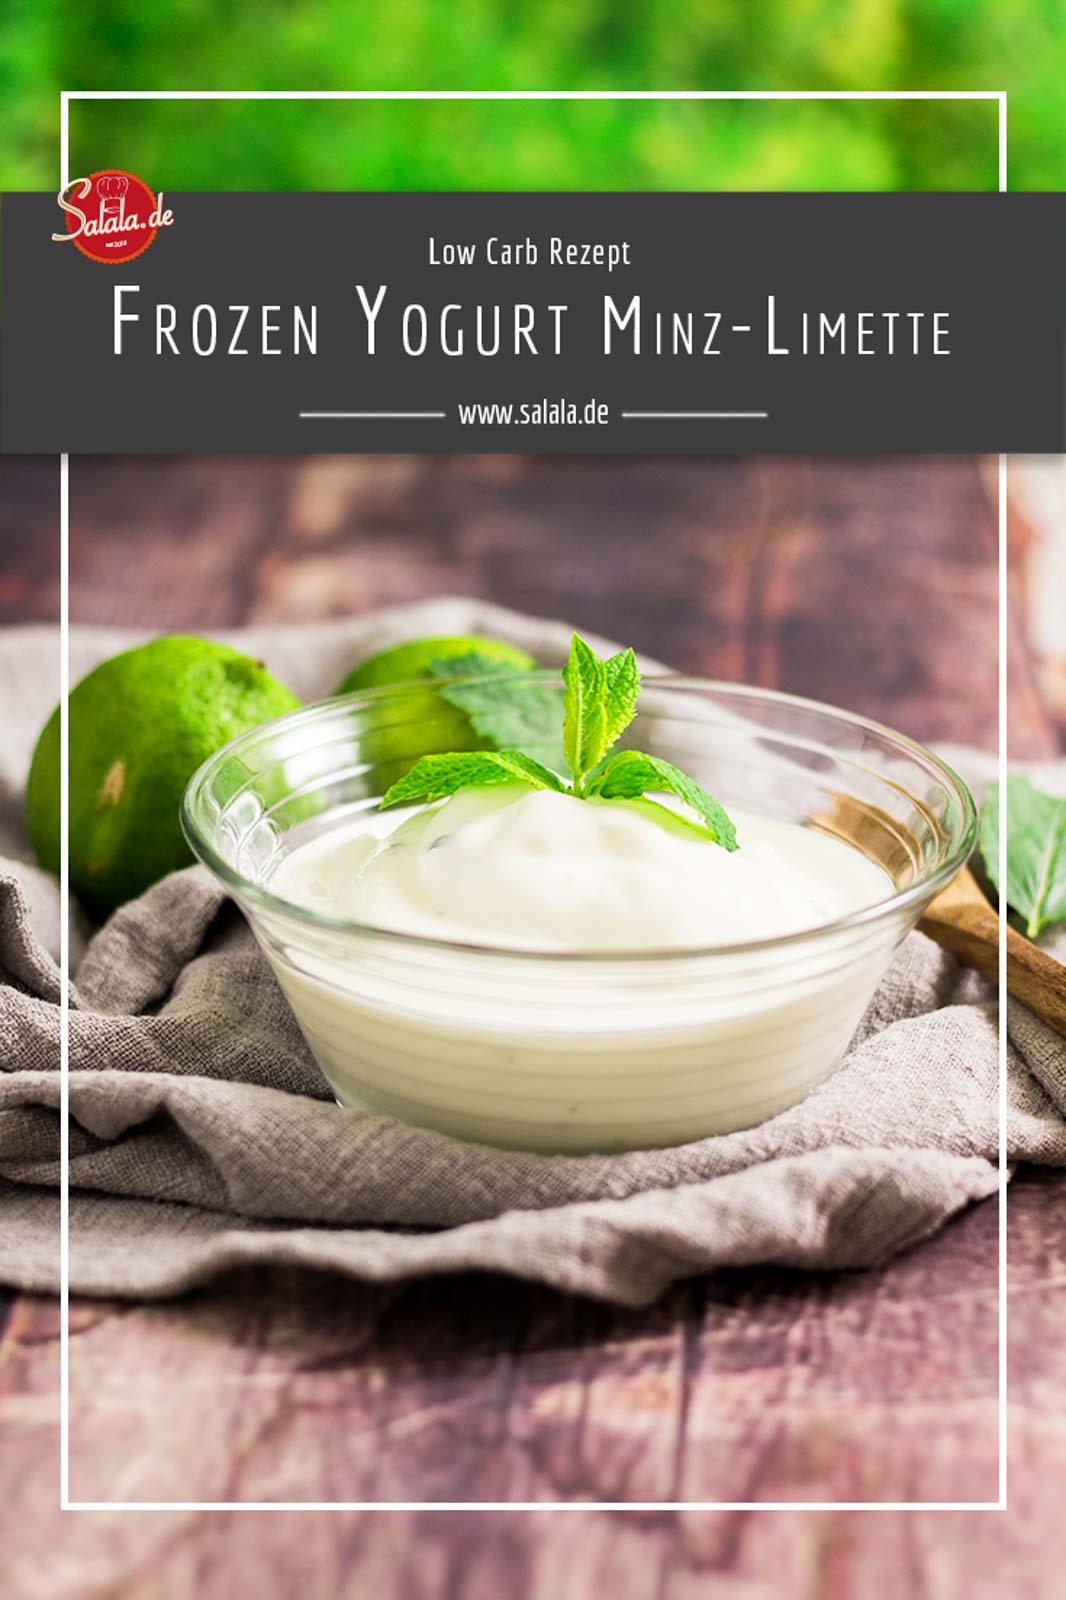 Frozen Yogurt mit Limette und Minze - by salala.de - zuckerfrei Low Carb Rezept mit Ibywind YF700 #lowcarb #lowcarbrezept #frozenyoghurt #zuckerfrei